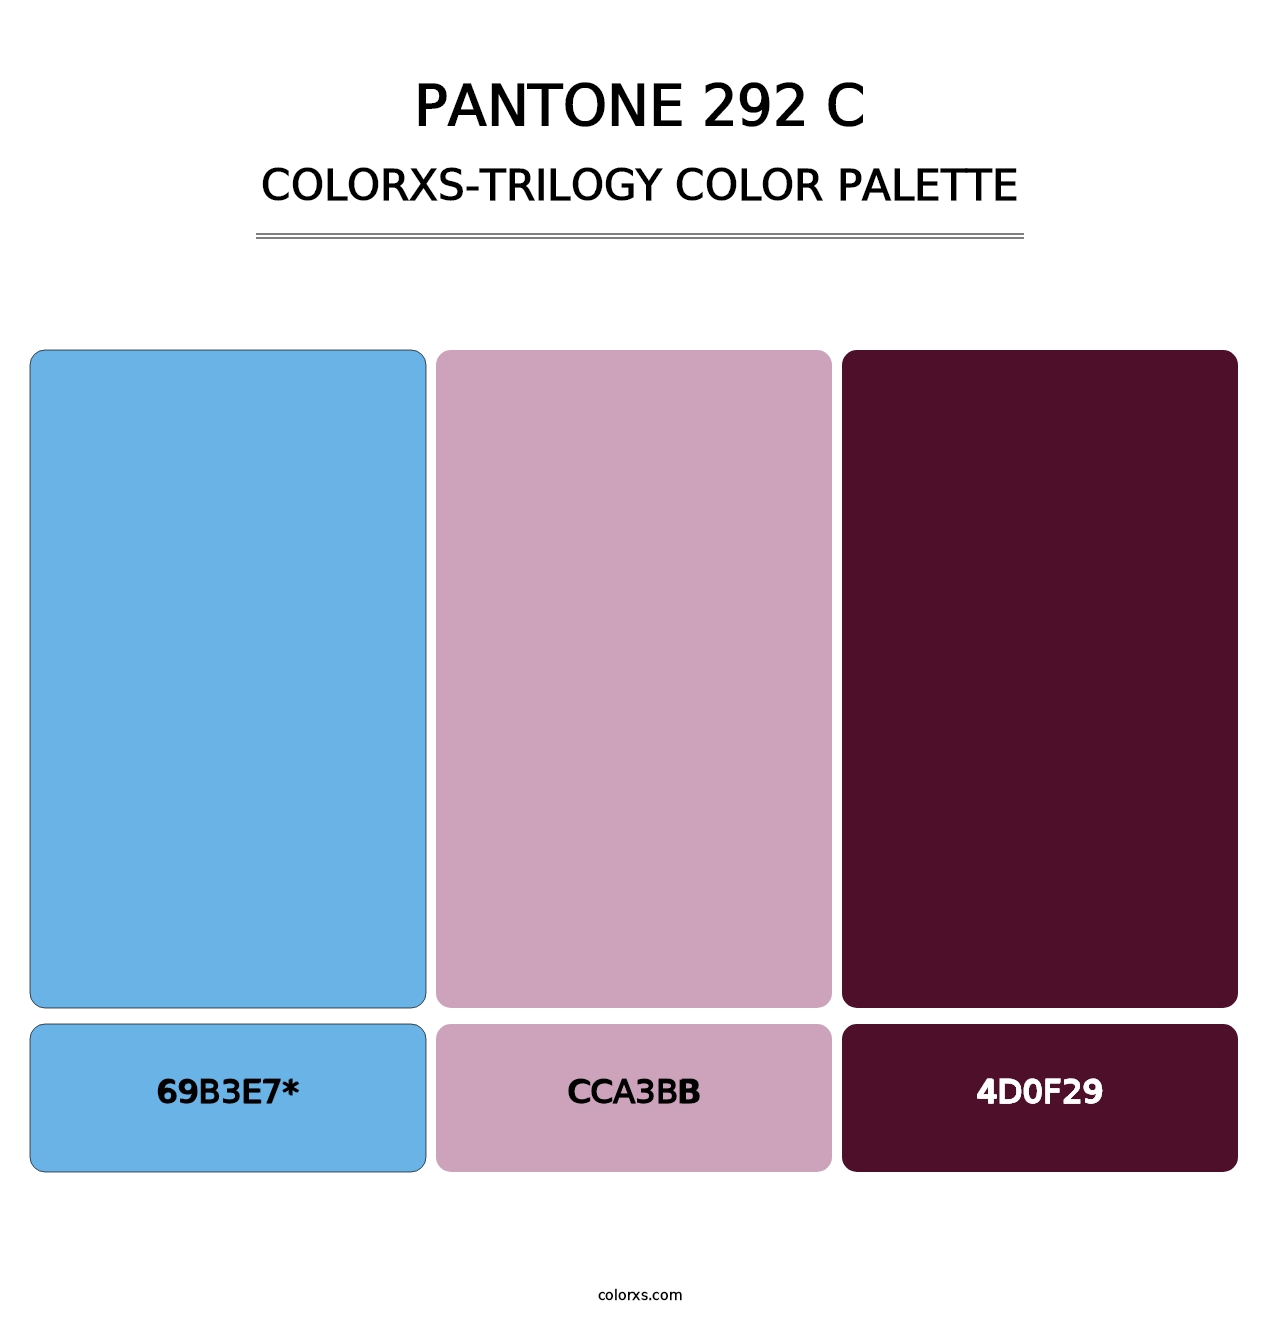 PANTONE 292 C - Colorxs Trilogy Palette